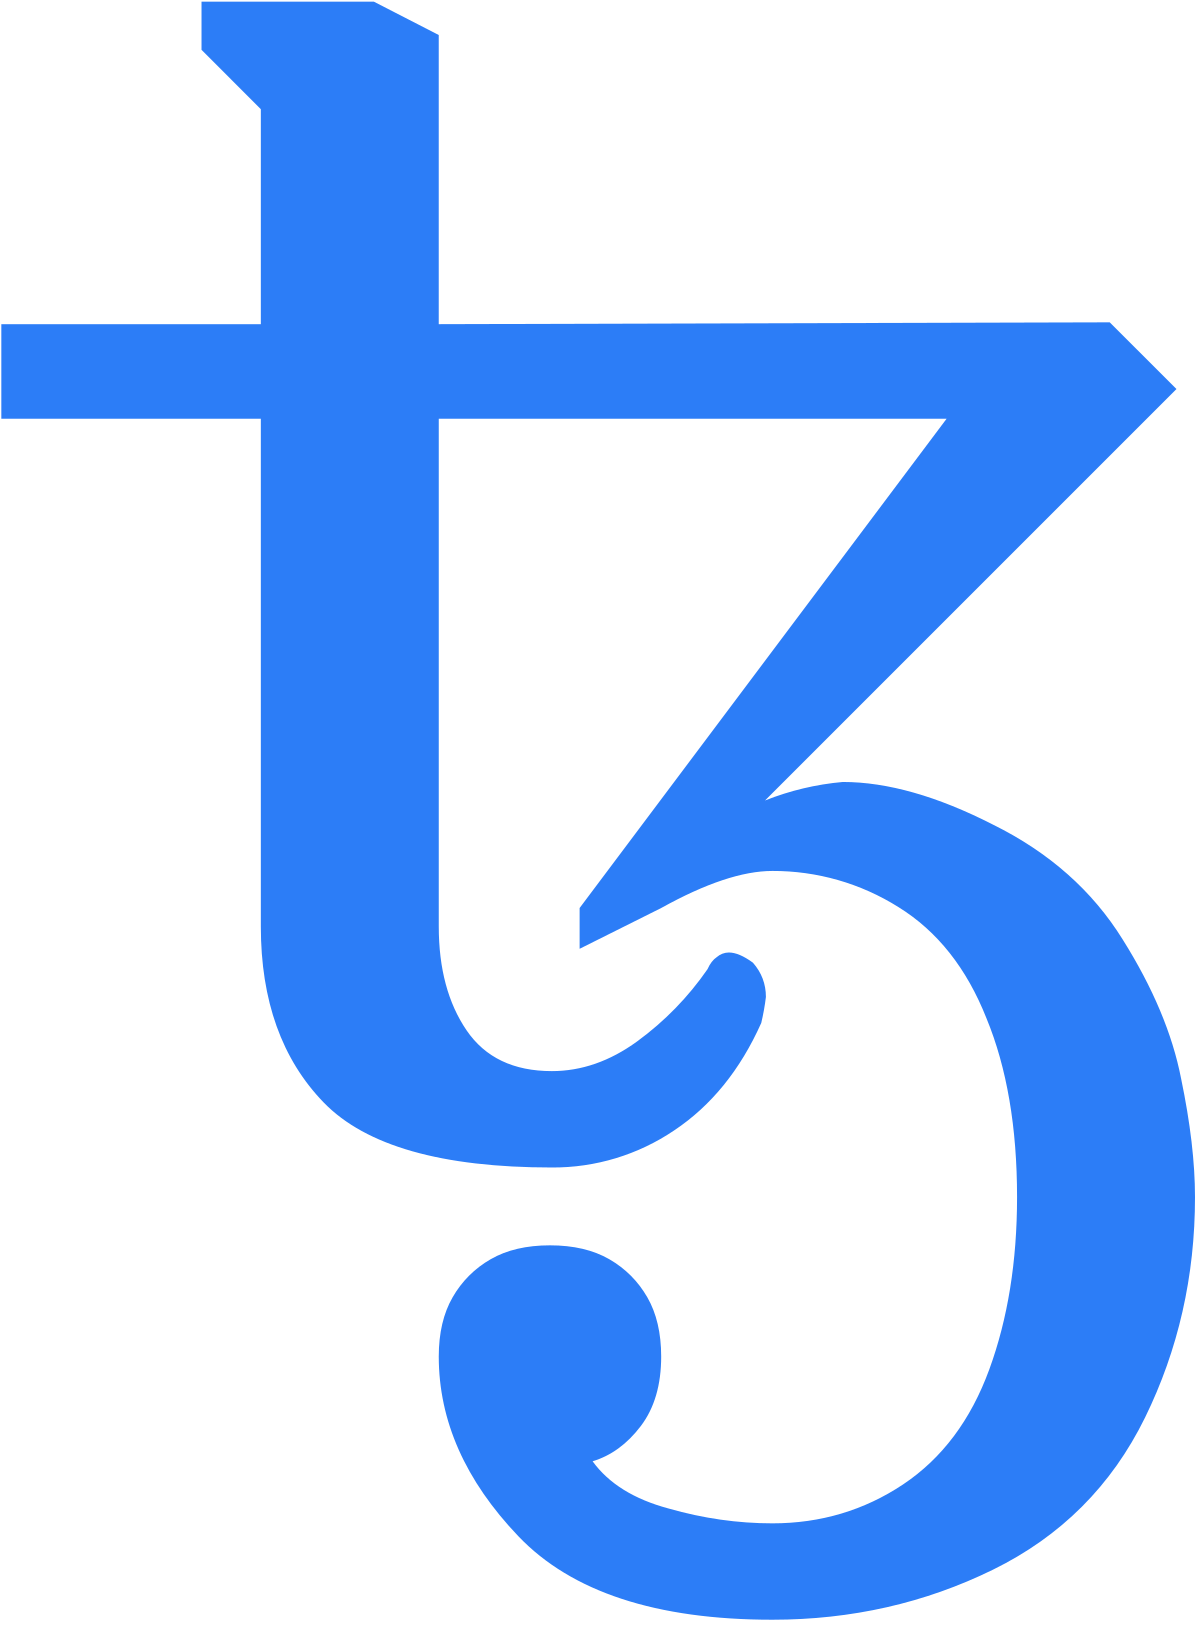 Bestand:Tezos-logo.svg - Wikimedia Commons